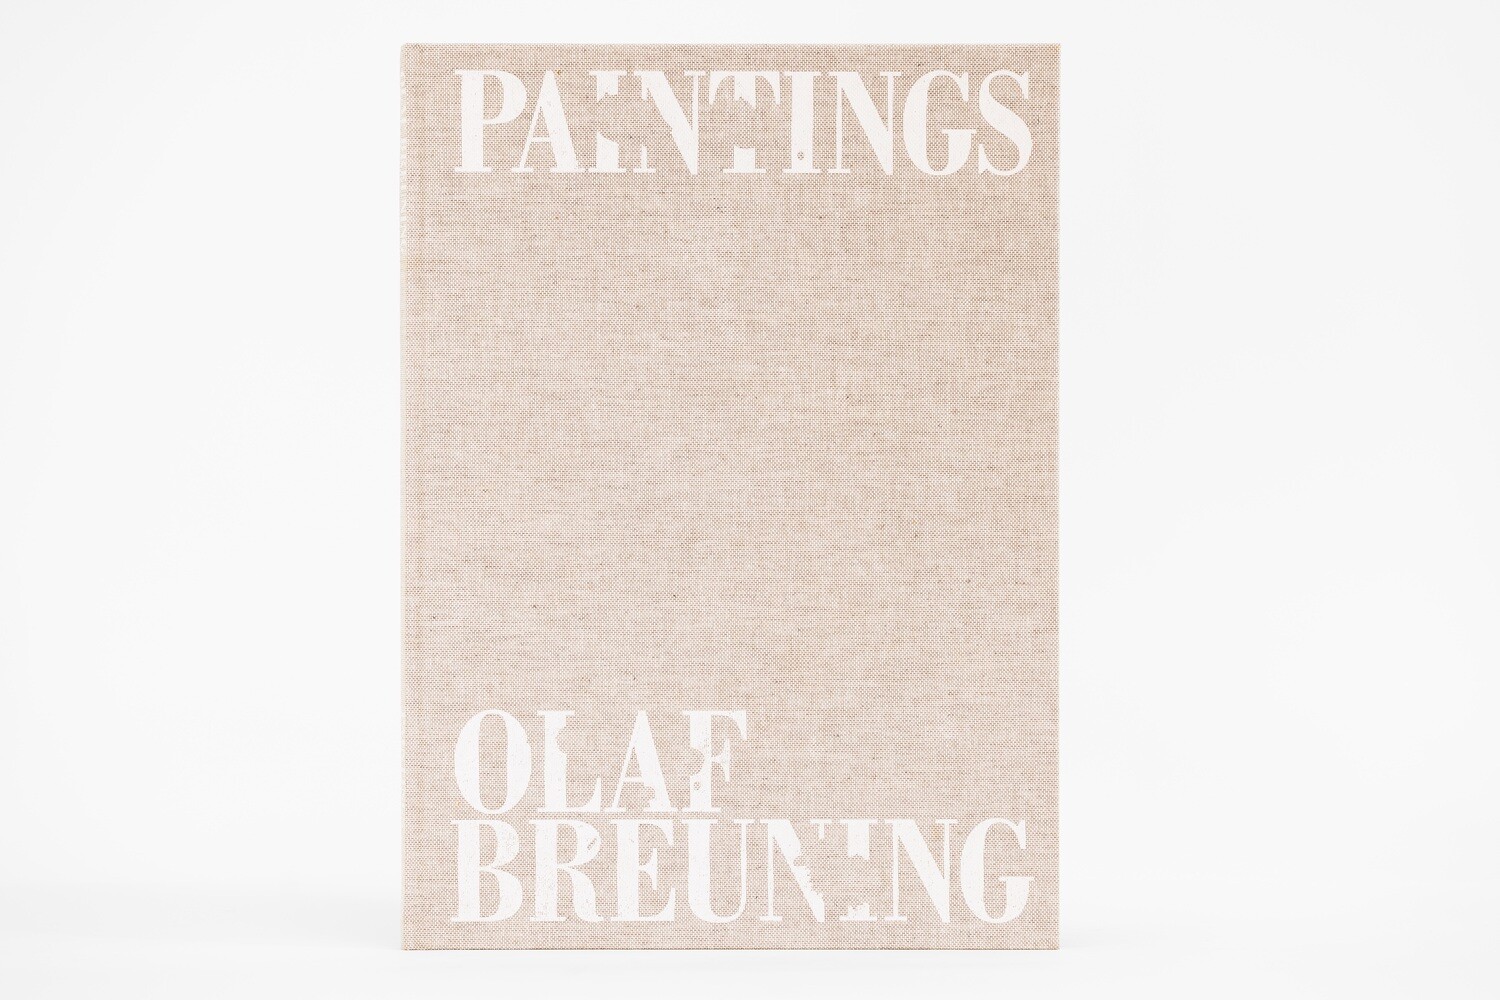 Olaf Breuning Paintings